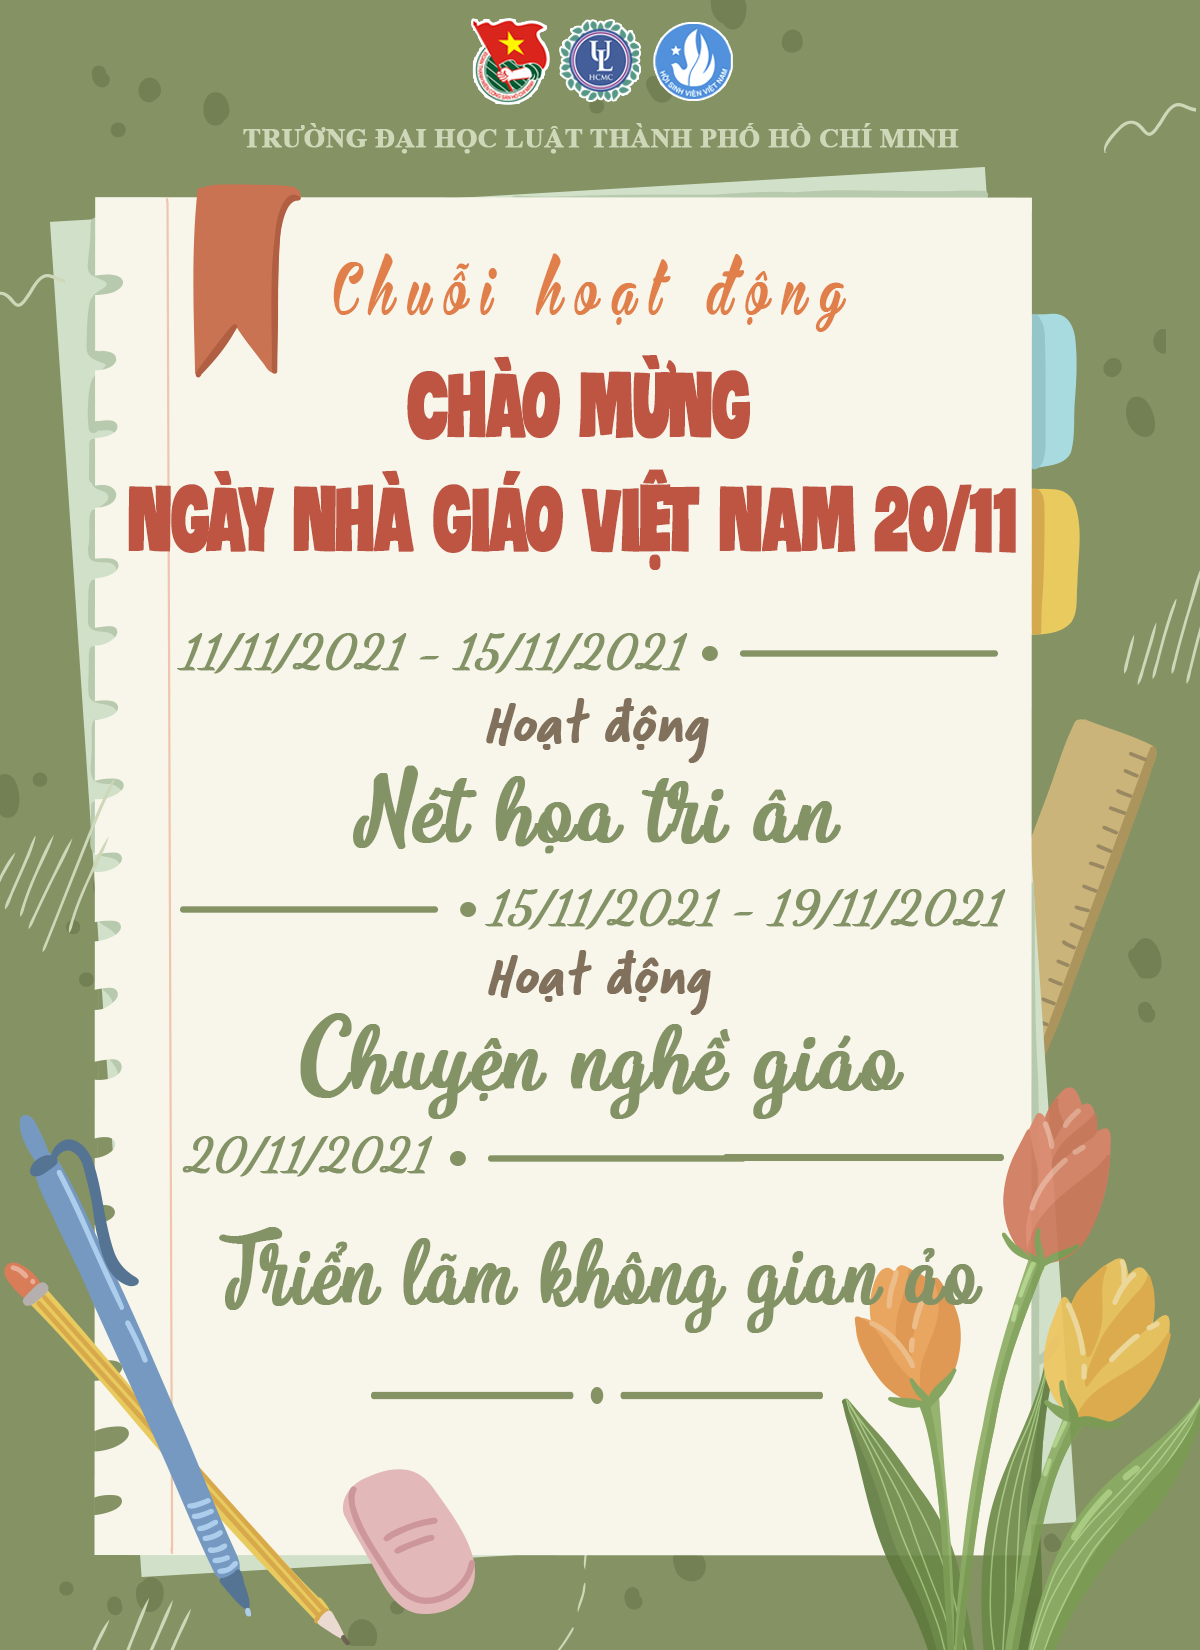 Nhiều hoạt động trong sinh viên chào mừng Ngày Nhà giáo Việt Nam